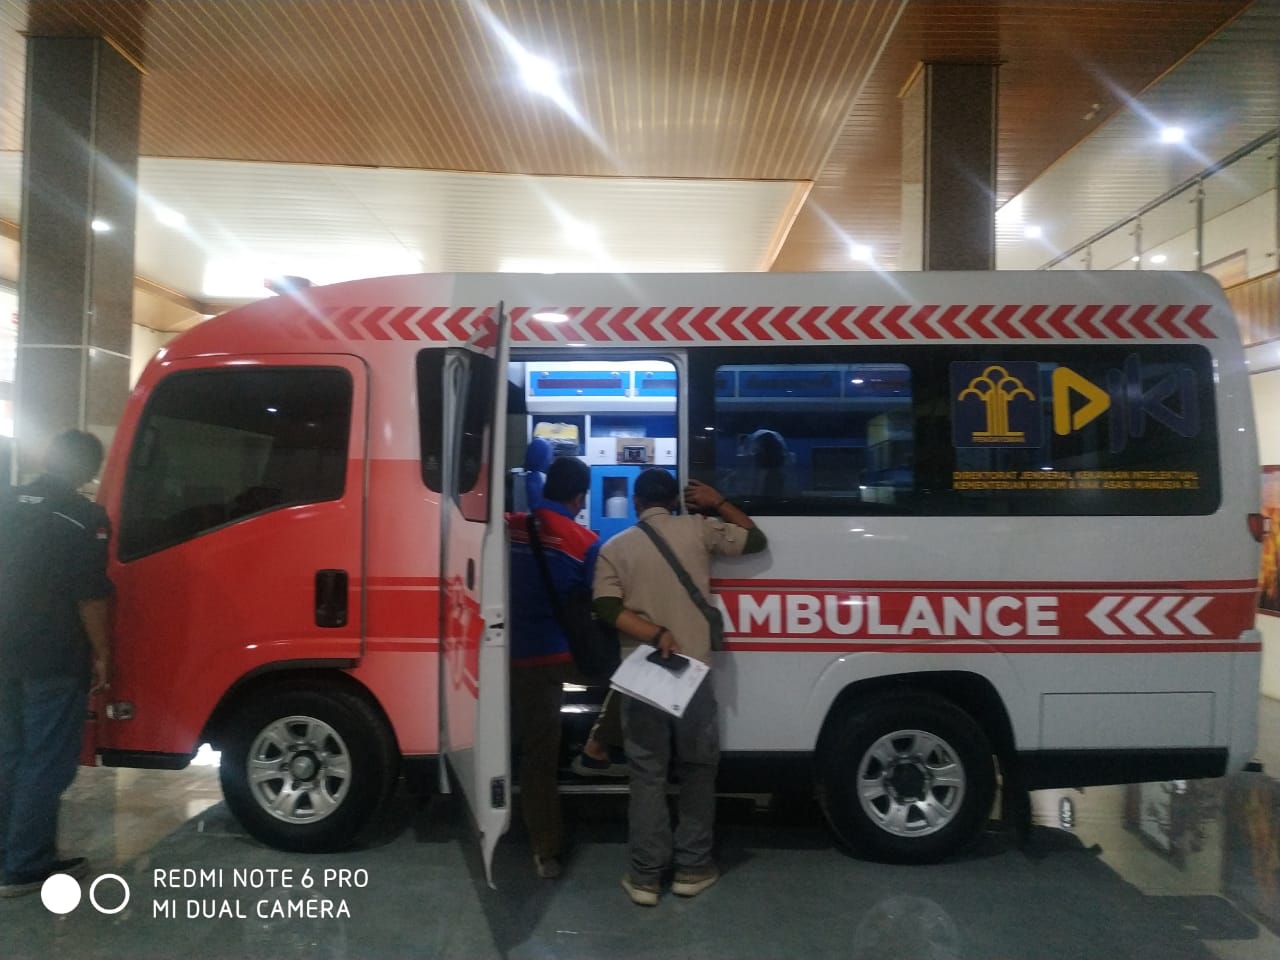 Harga Karoseri Modifikasi Ambulance Berkualitas Lamongan